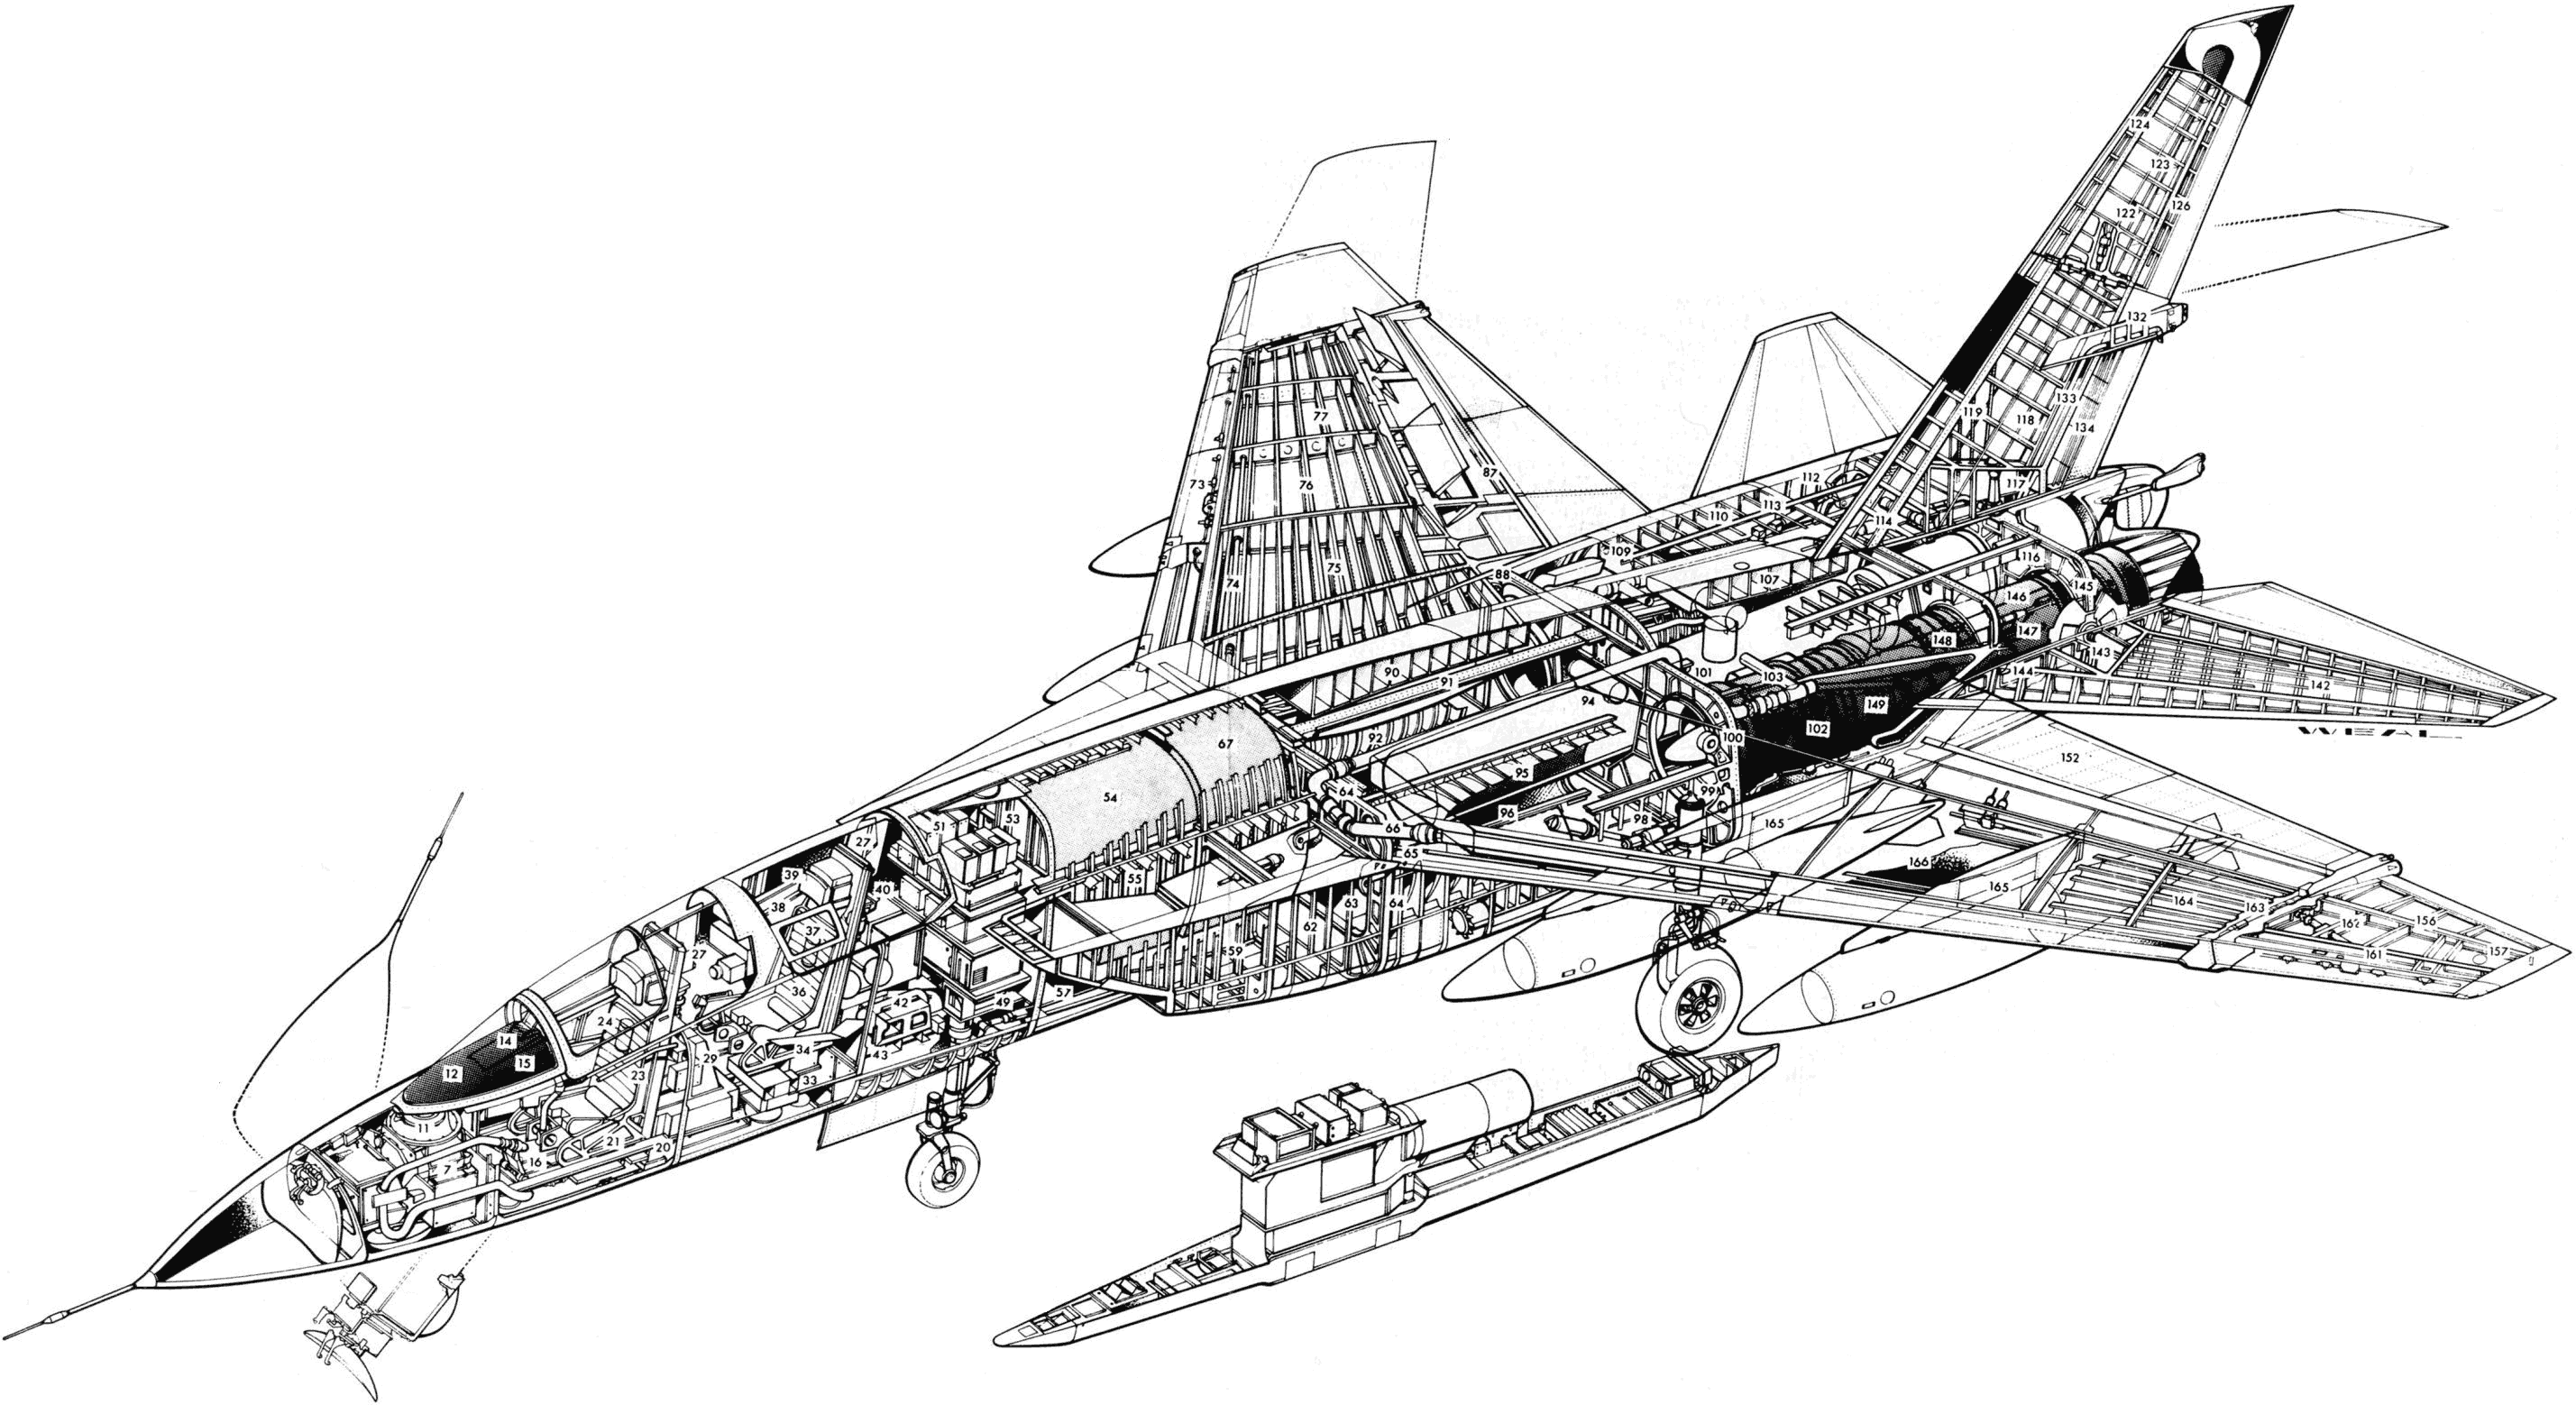 a-5攻击机本身是为美国海军专门设计的一款核打击飞机,早期的a-5a型